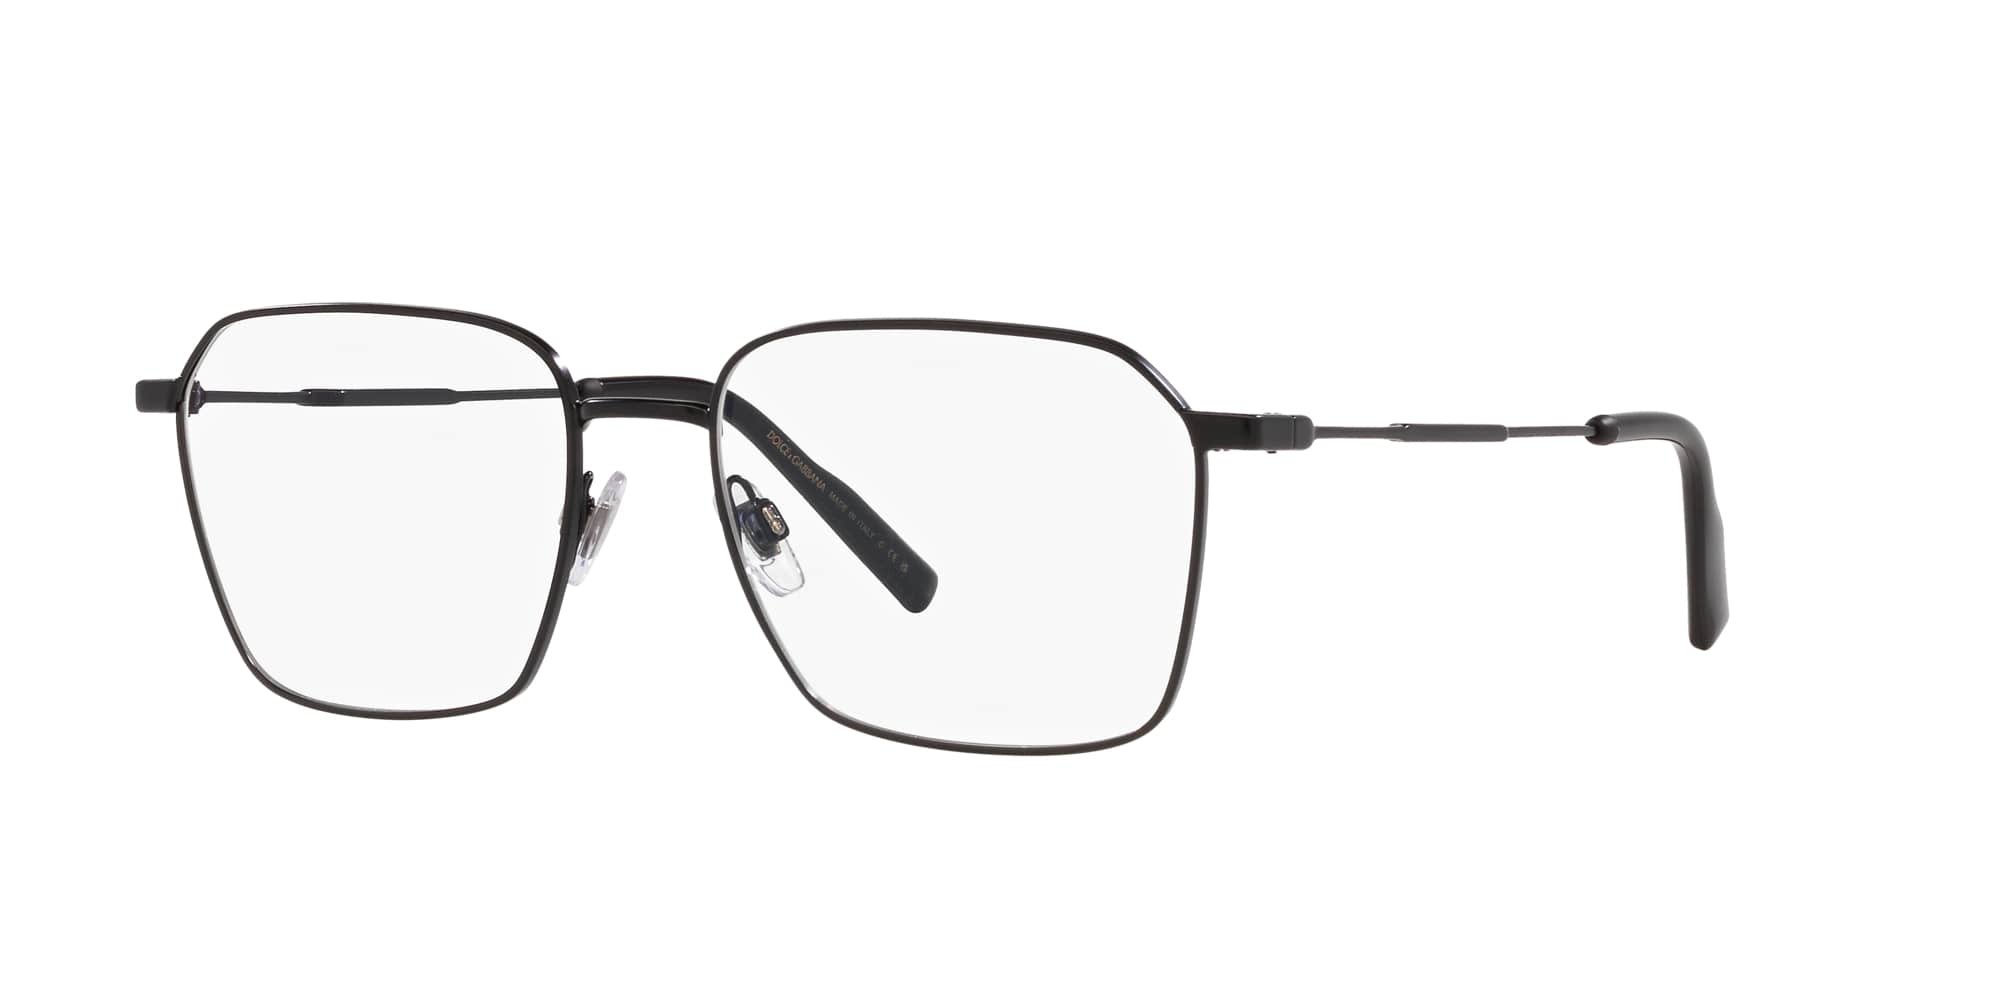 Das Bild zeigt die Korrektionsbrille DG1350 1106 von der Marke D&G in schwarz.